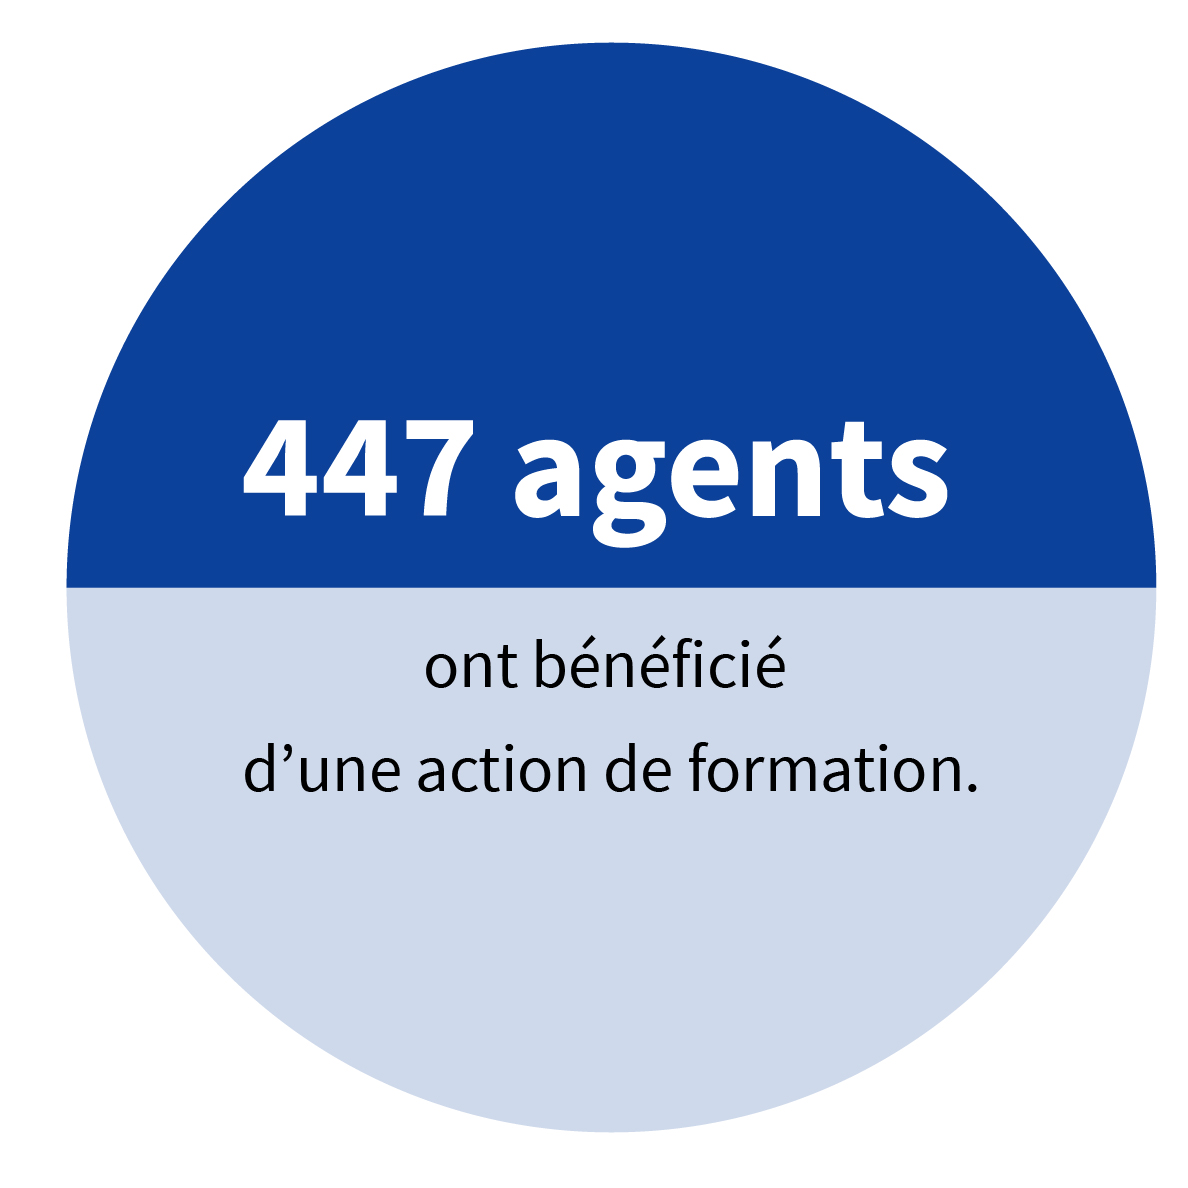 447 agents ont bénéficié d’une action de formation.